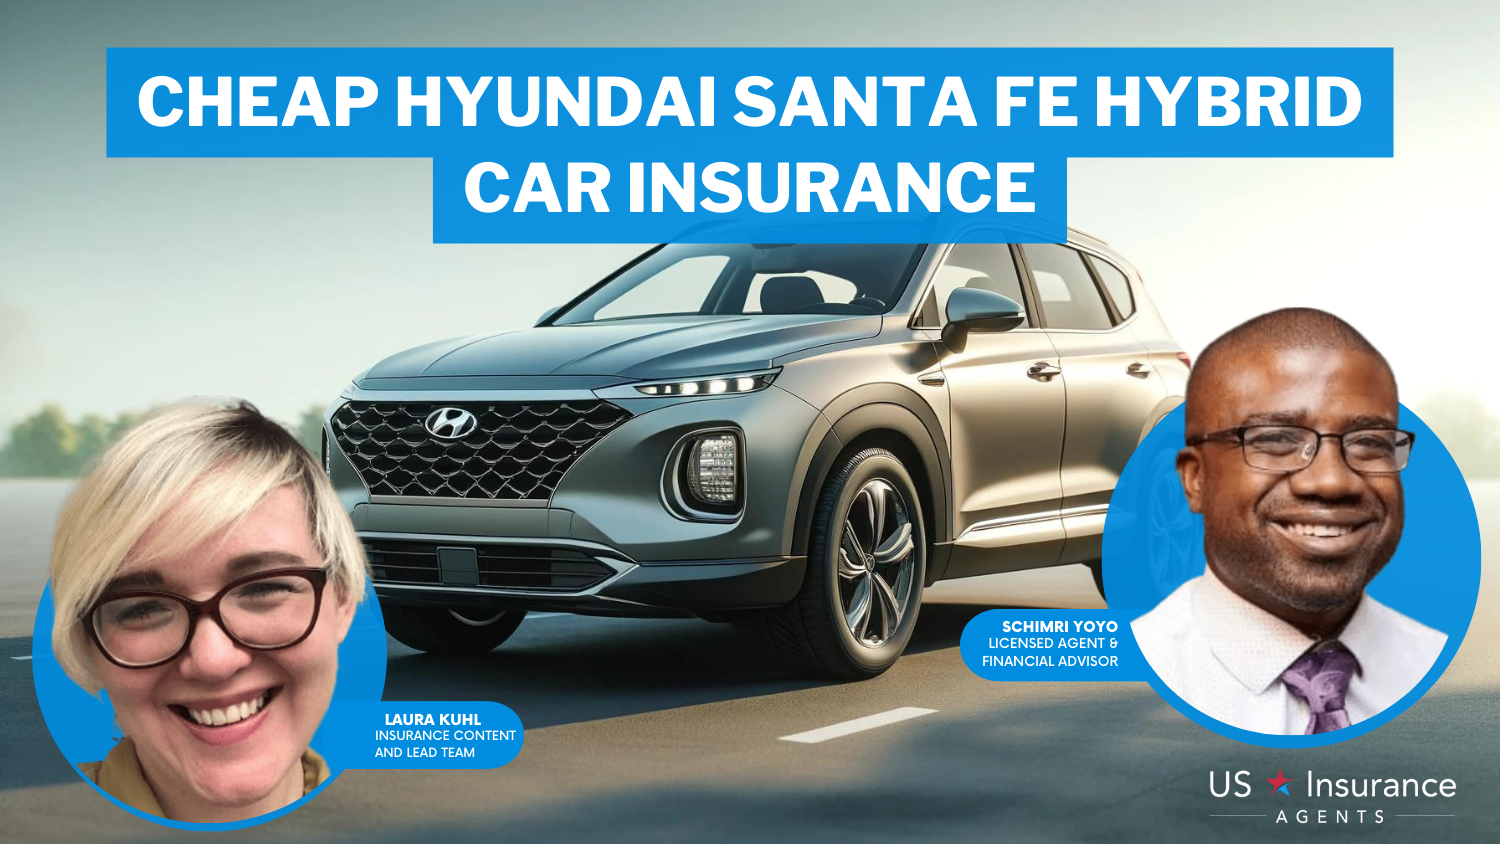 Cheap Hyundai Santa Fe Hybrid Car Insurance: State Farm, Mercury, and Travelers